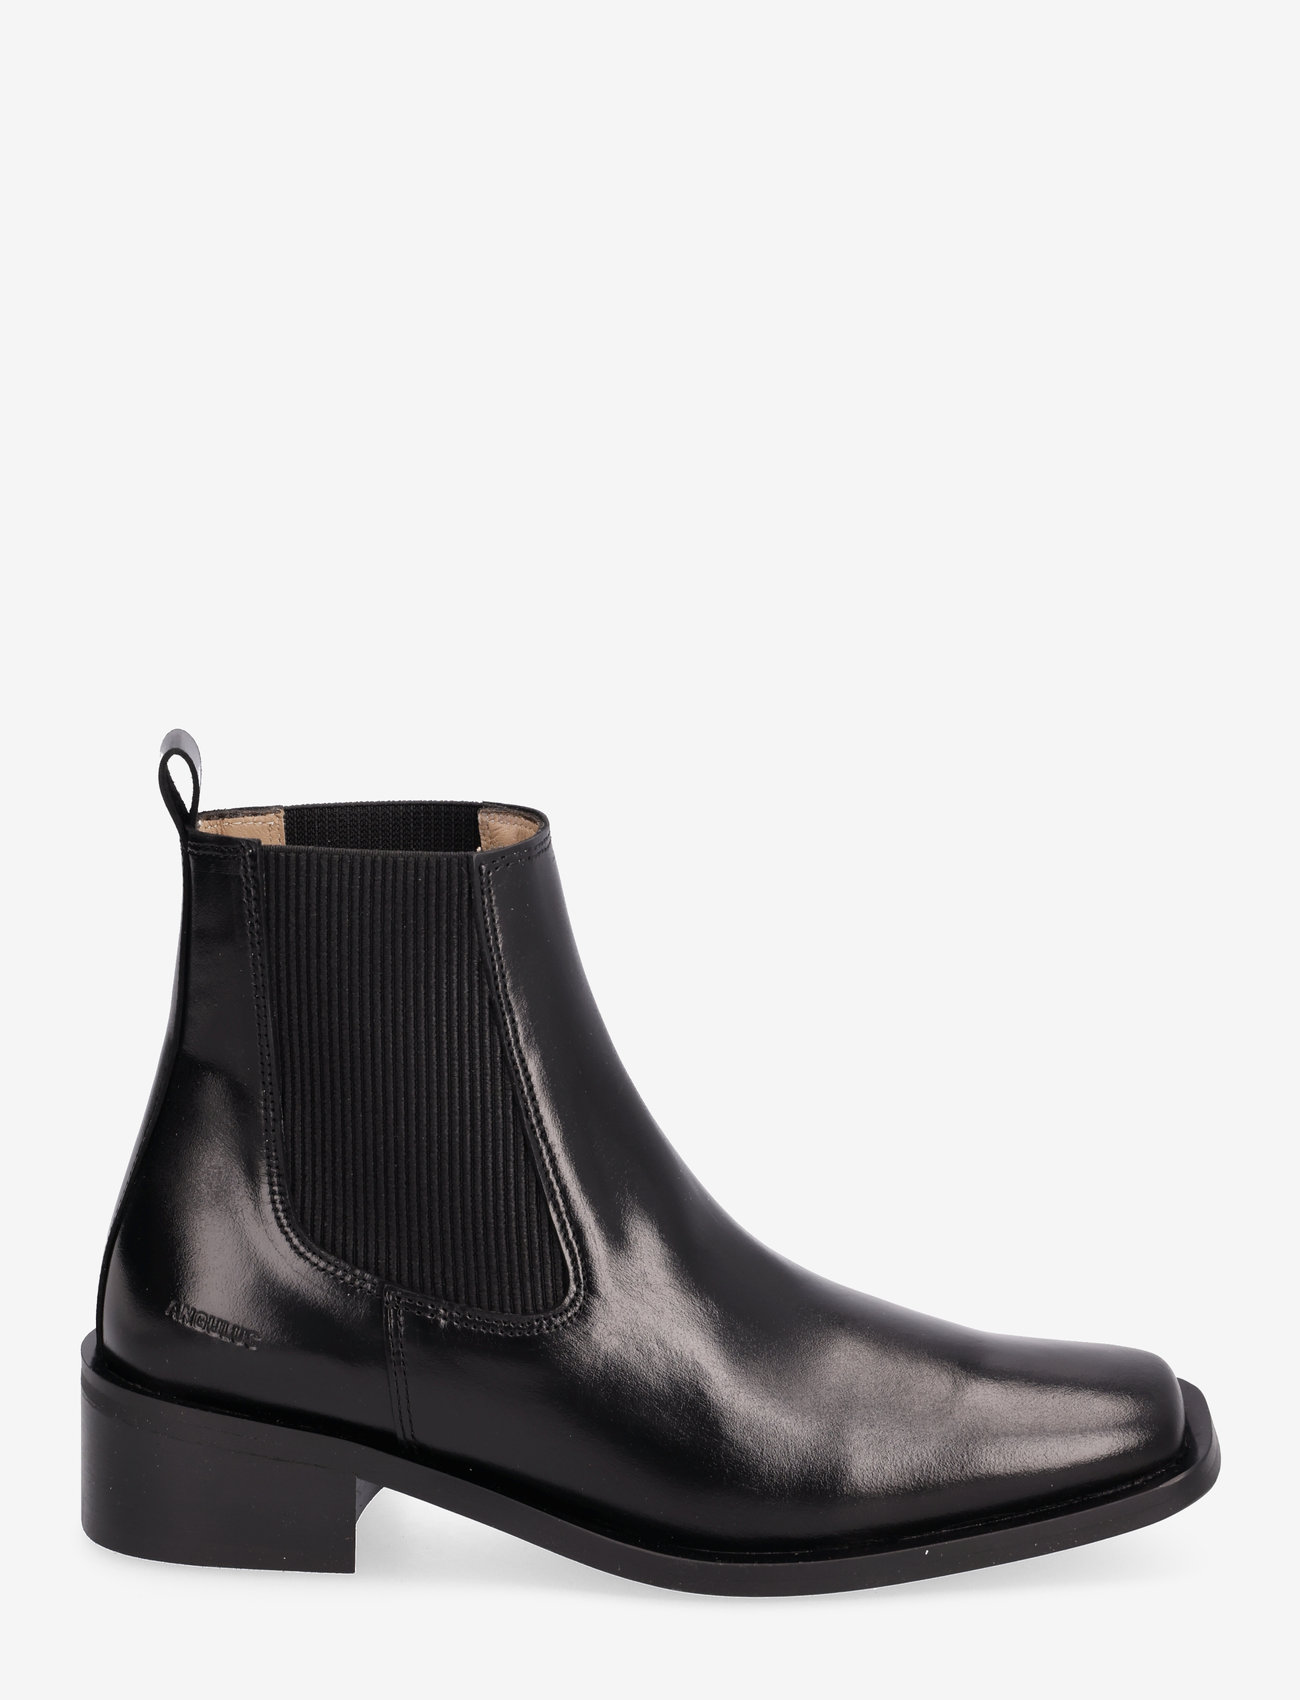 ANGULUS - Booties - Block heel - with elas - flache stiefeletten - 1835/019 black /black - 1